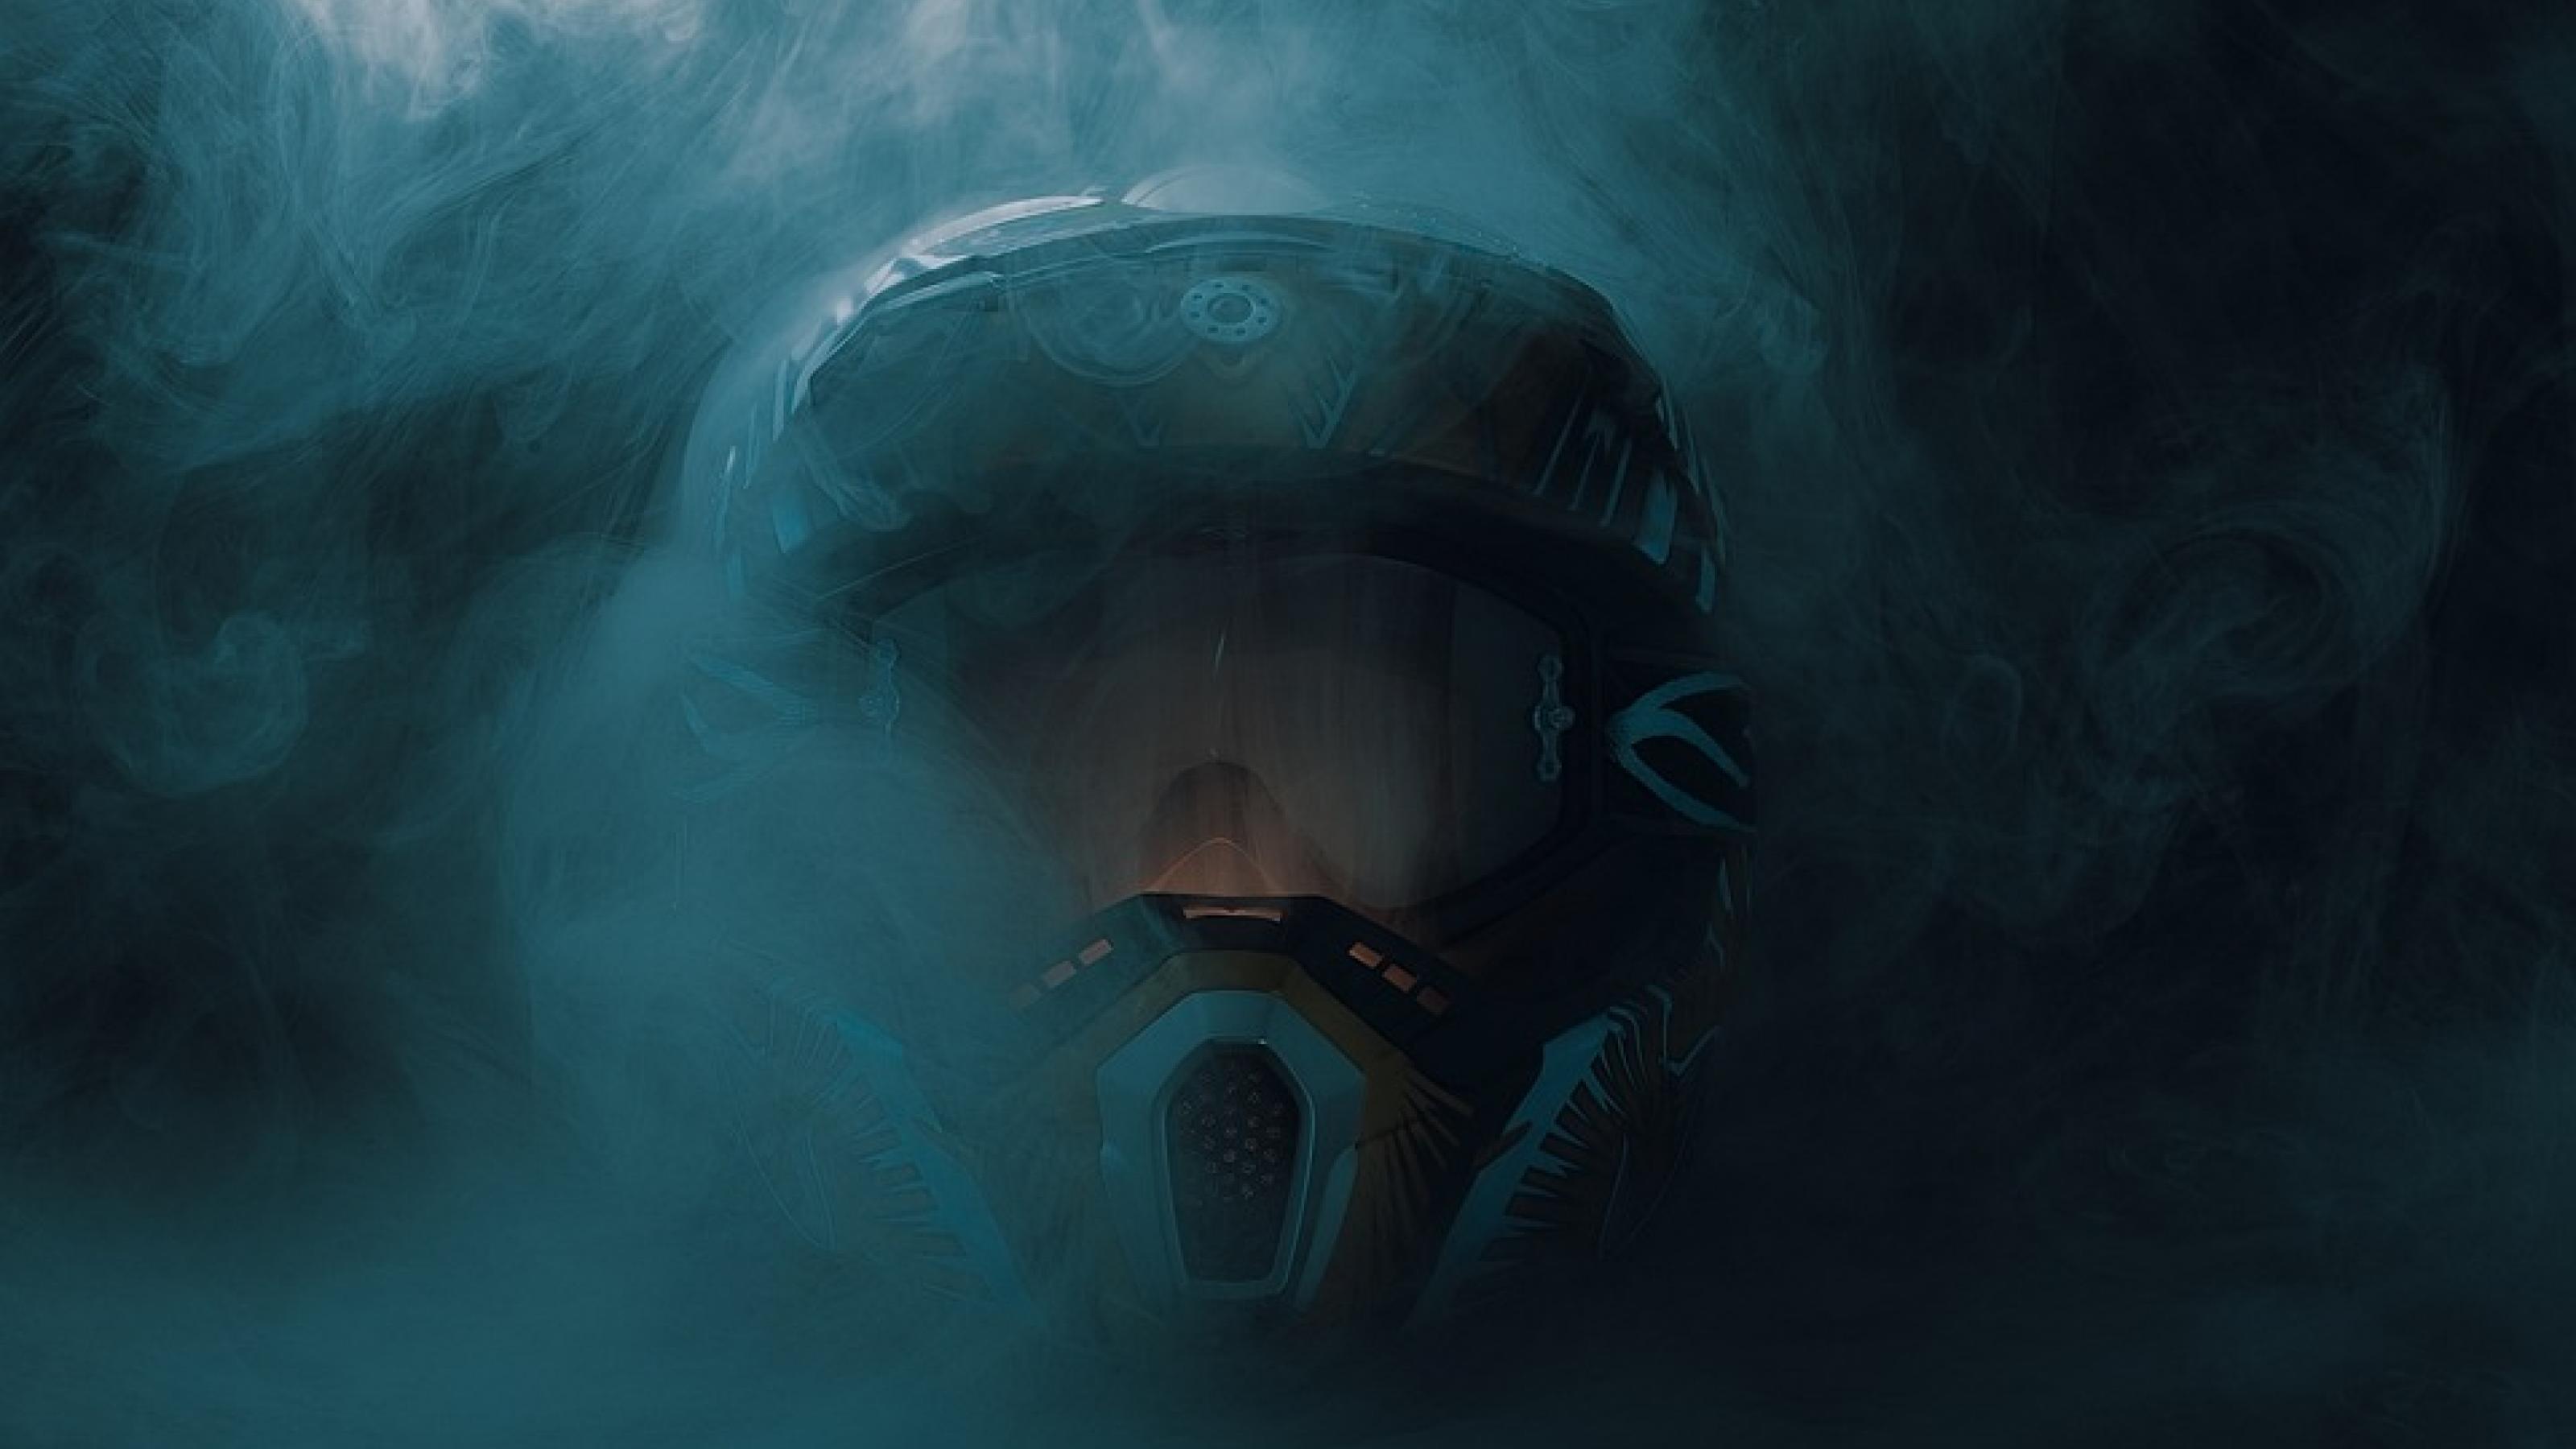 Ein Helm im Nebel, man sieht das Gesicht des Menschen nicht